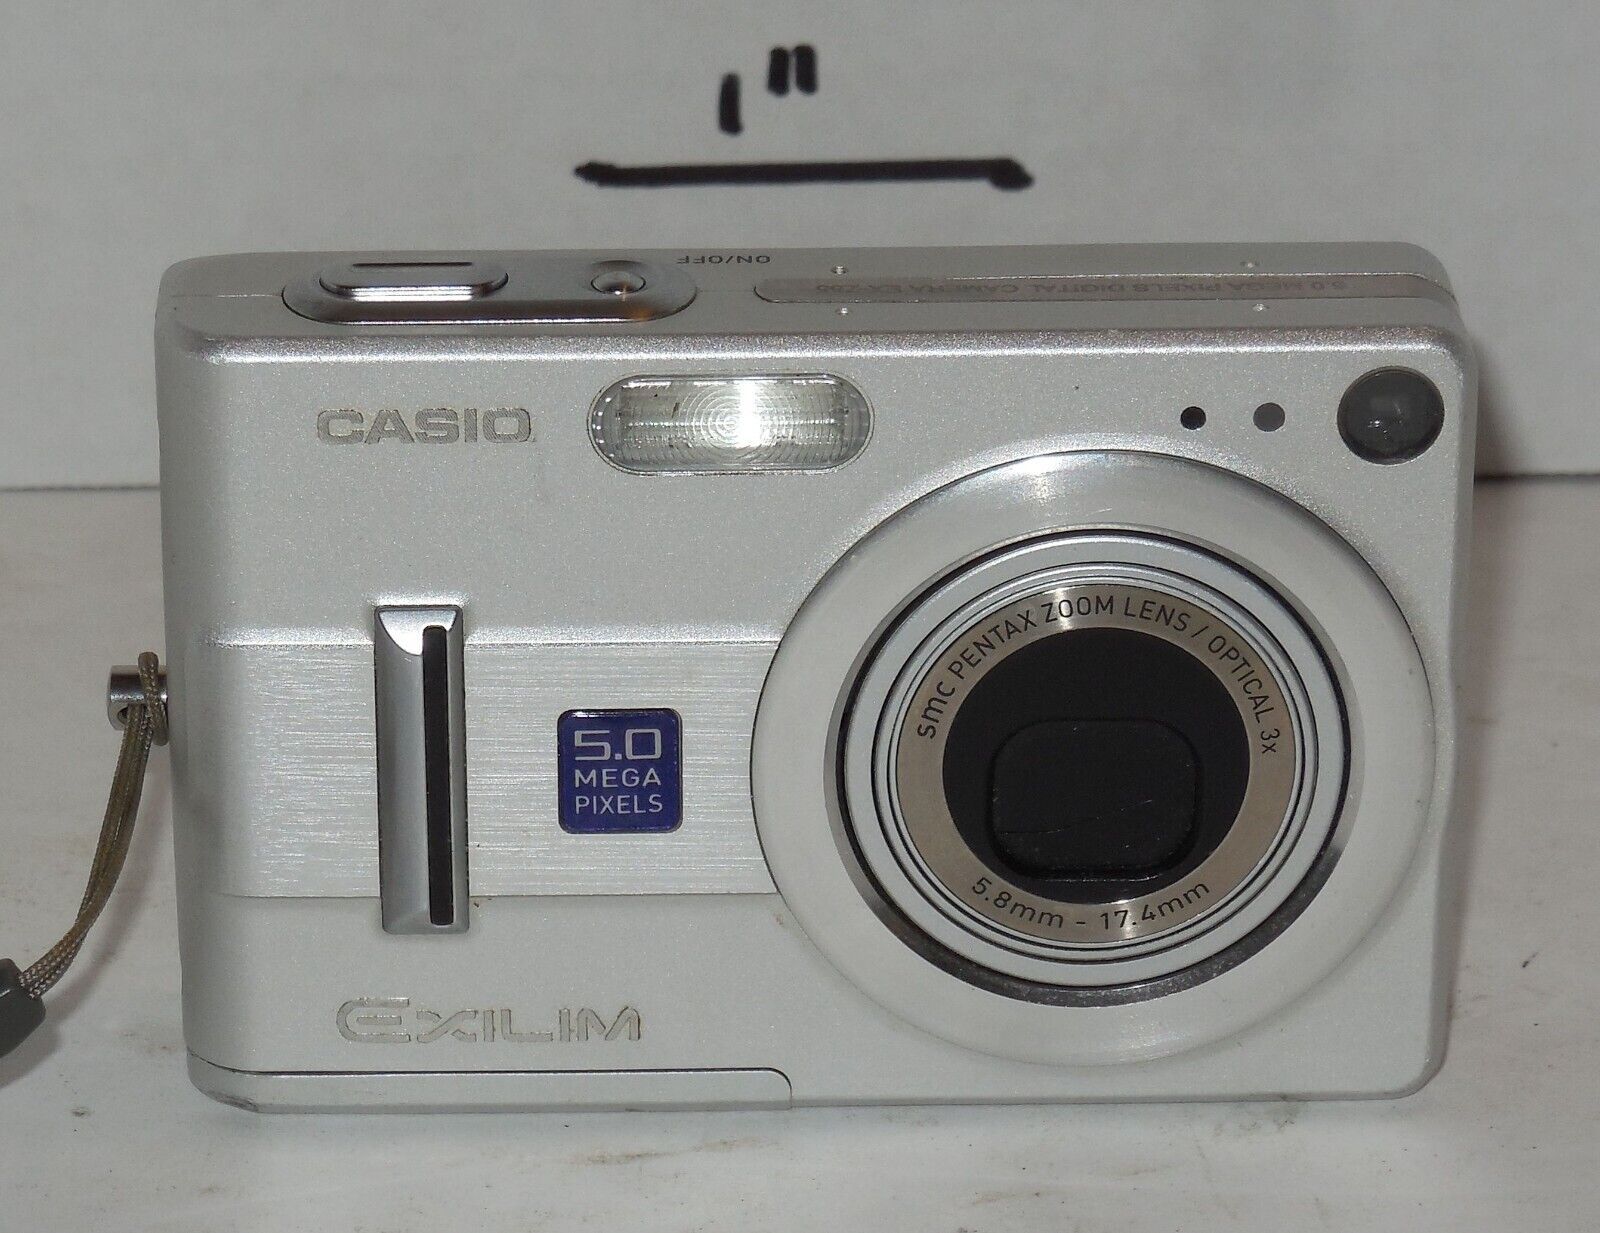 Casio EXILIM EX-Z55 5.0MP Digital Camera - Silver Tested Works - $49.25